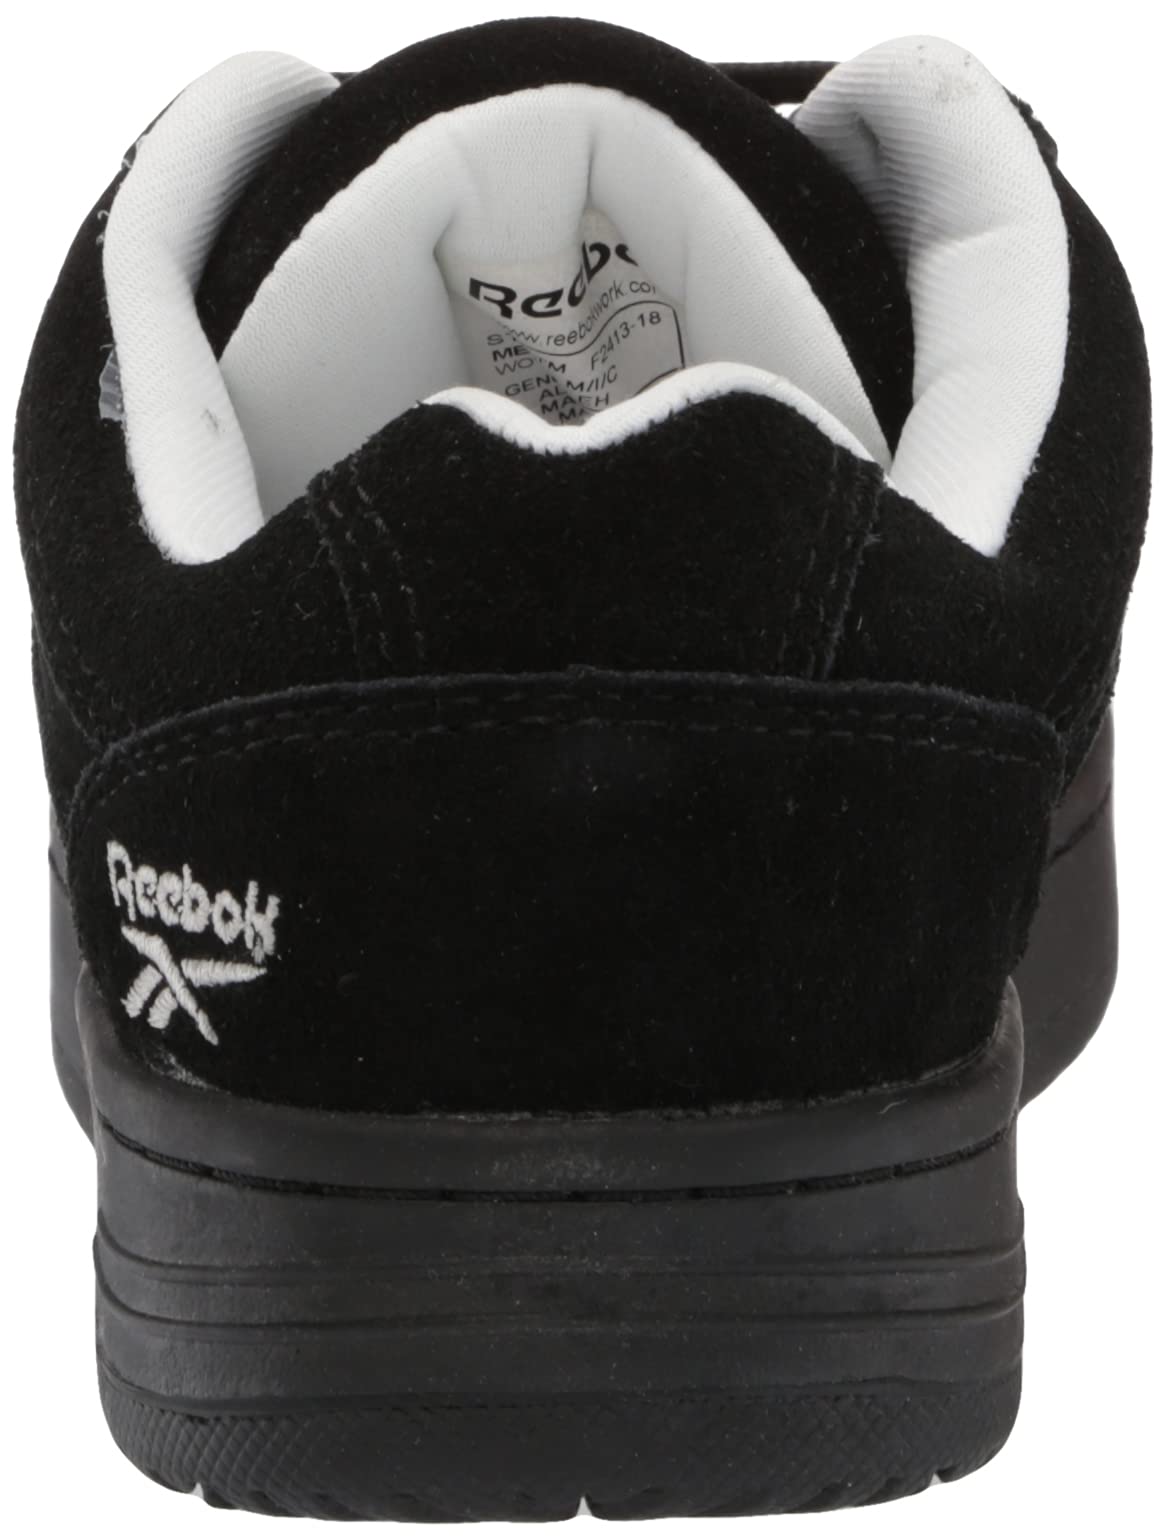 Reebok Work Women's Soyay RB191 Work Shoe,Black